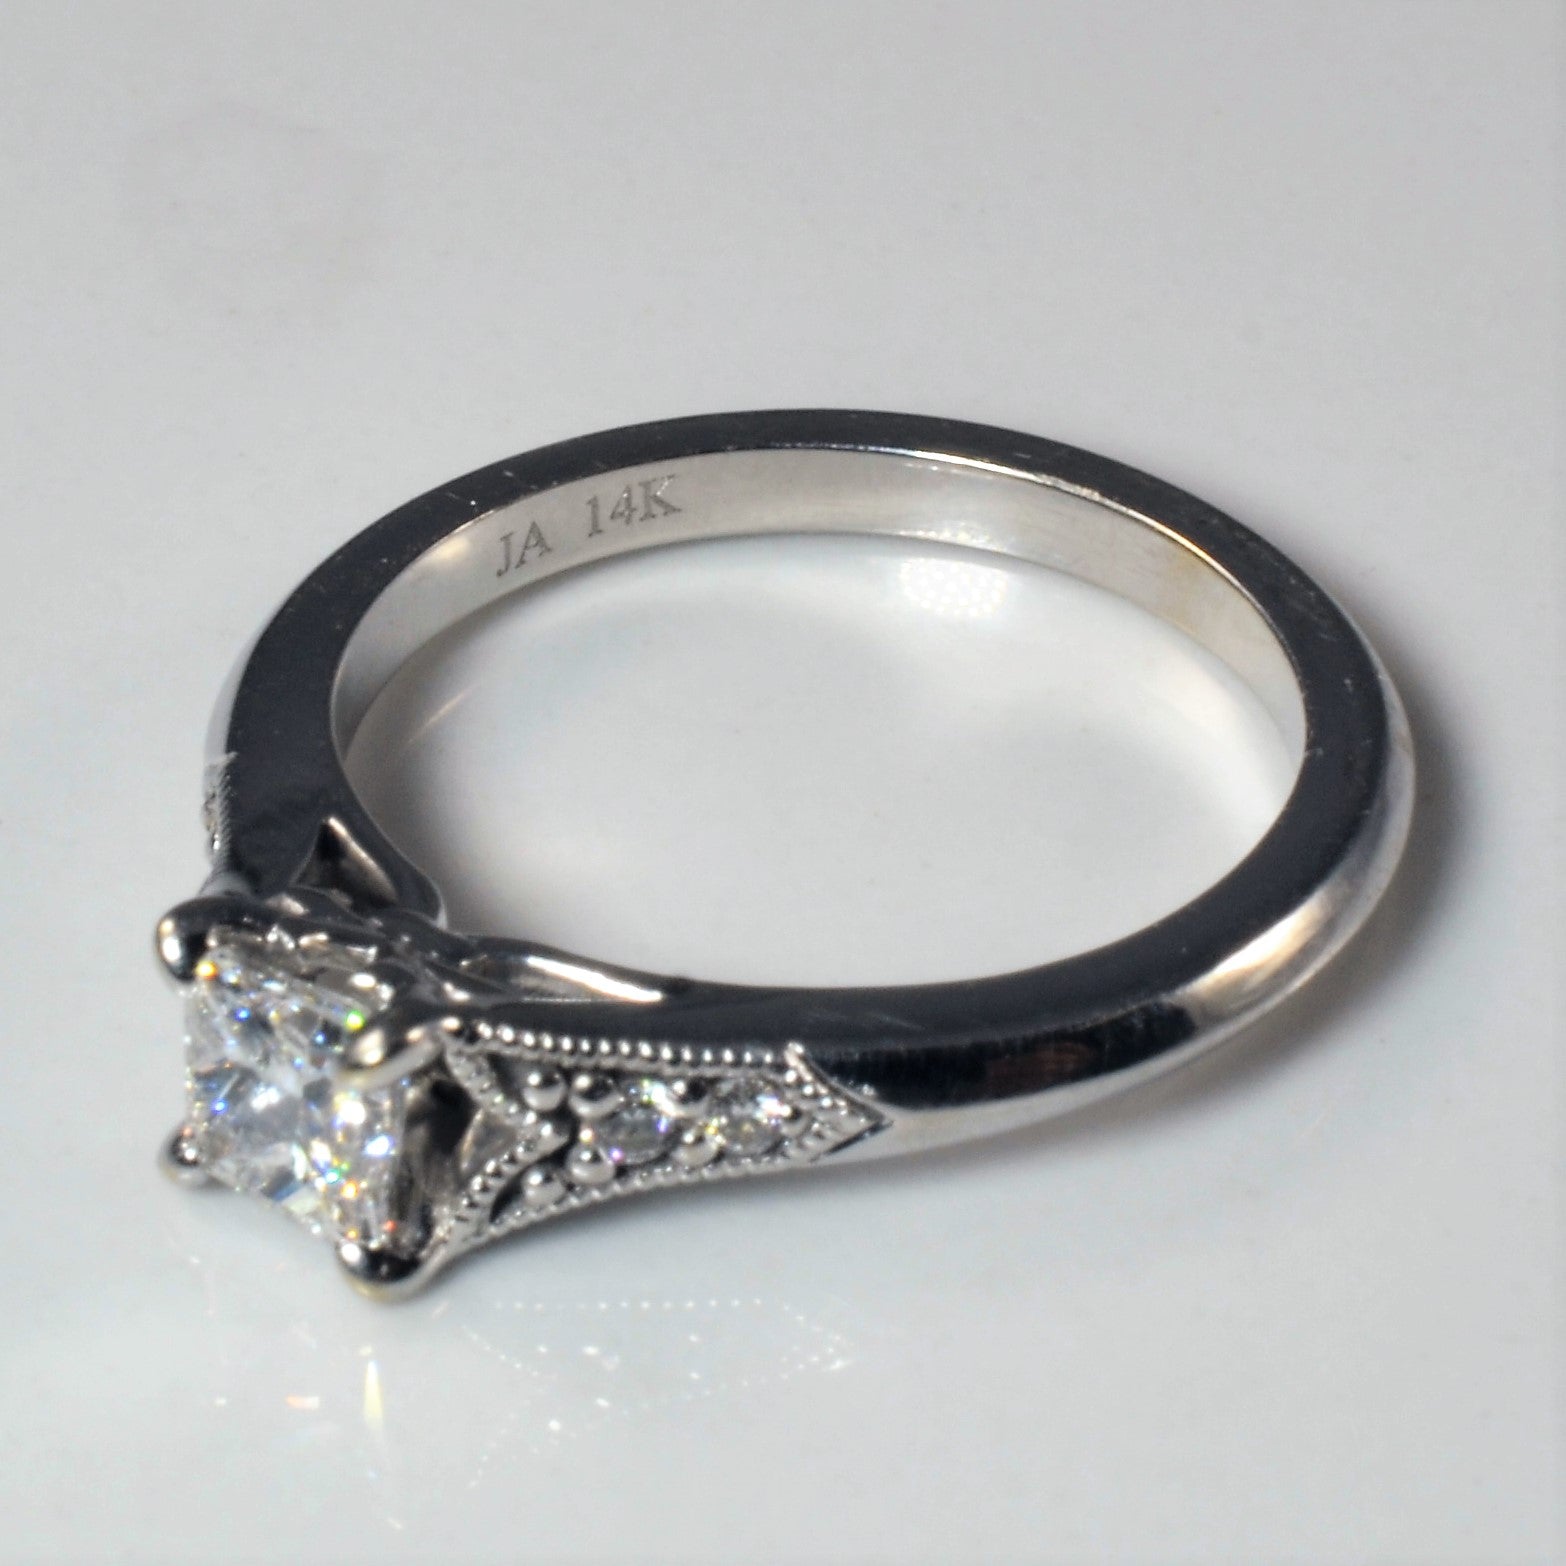 James Allen' Art Deco Inspired Engagement Ring | 0.56ctw | SZ 5.75 |